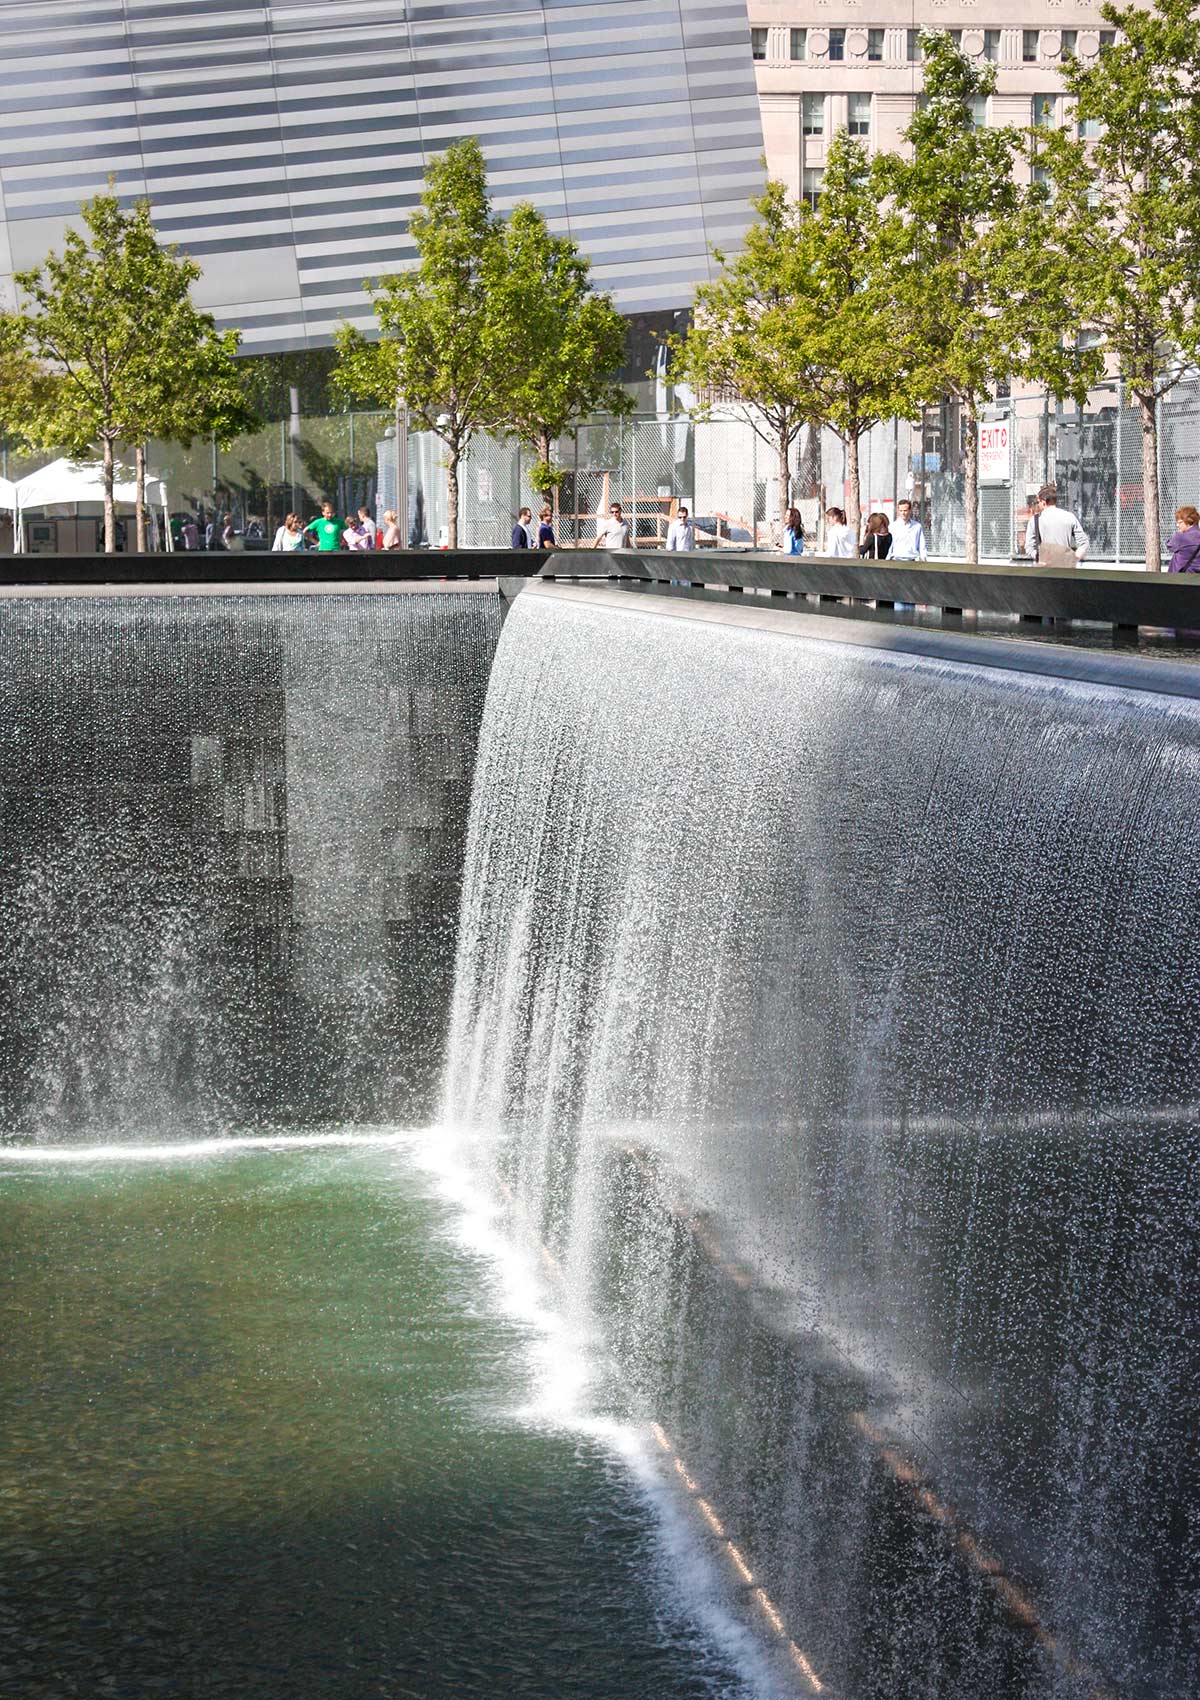 Mémorial du 11 septembre, New York, États-Unis / 9/11 Memorial, NY, NYC, USA